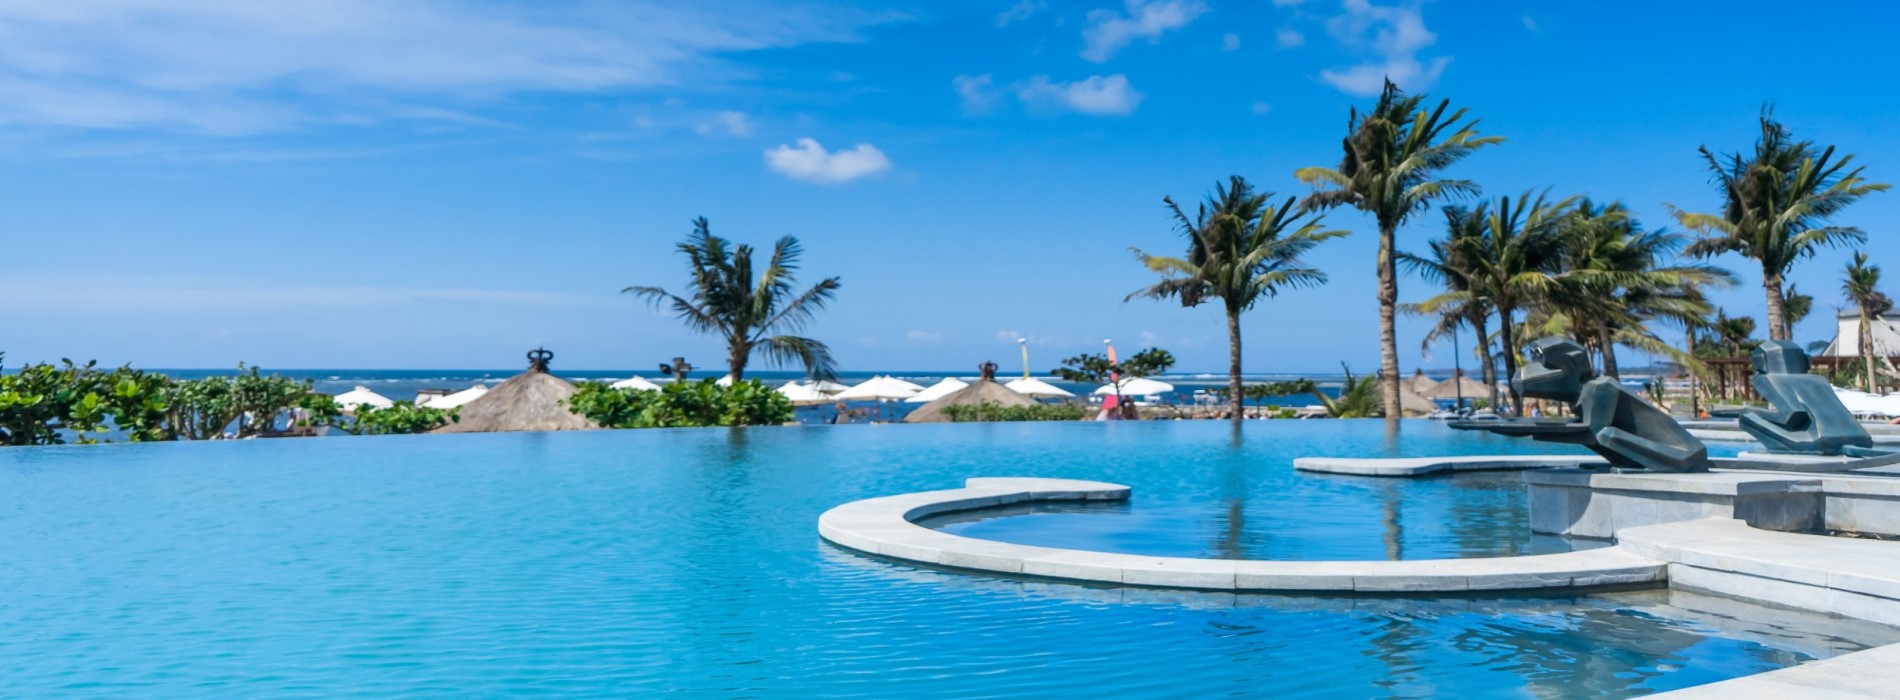 グランド ミラージュ リゾート タラソ バリ Grand Mirage Resort Thalasso Bali スマートフォン版ページはこちら 楽天トラベル